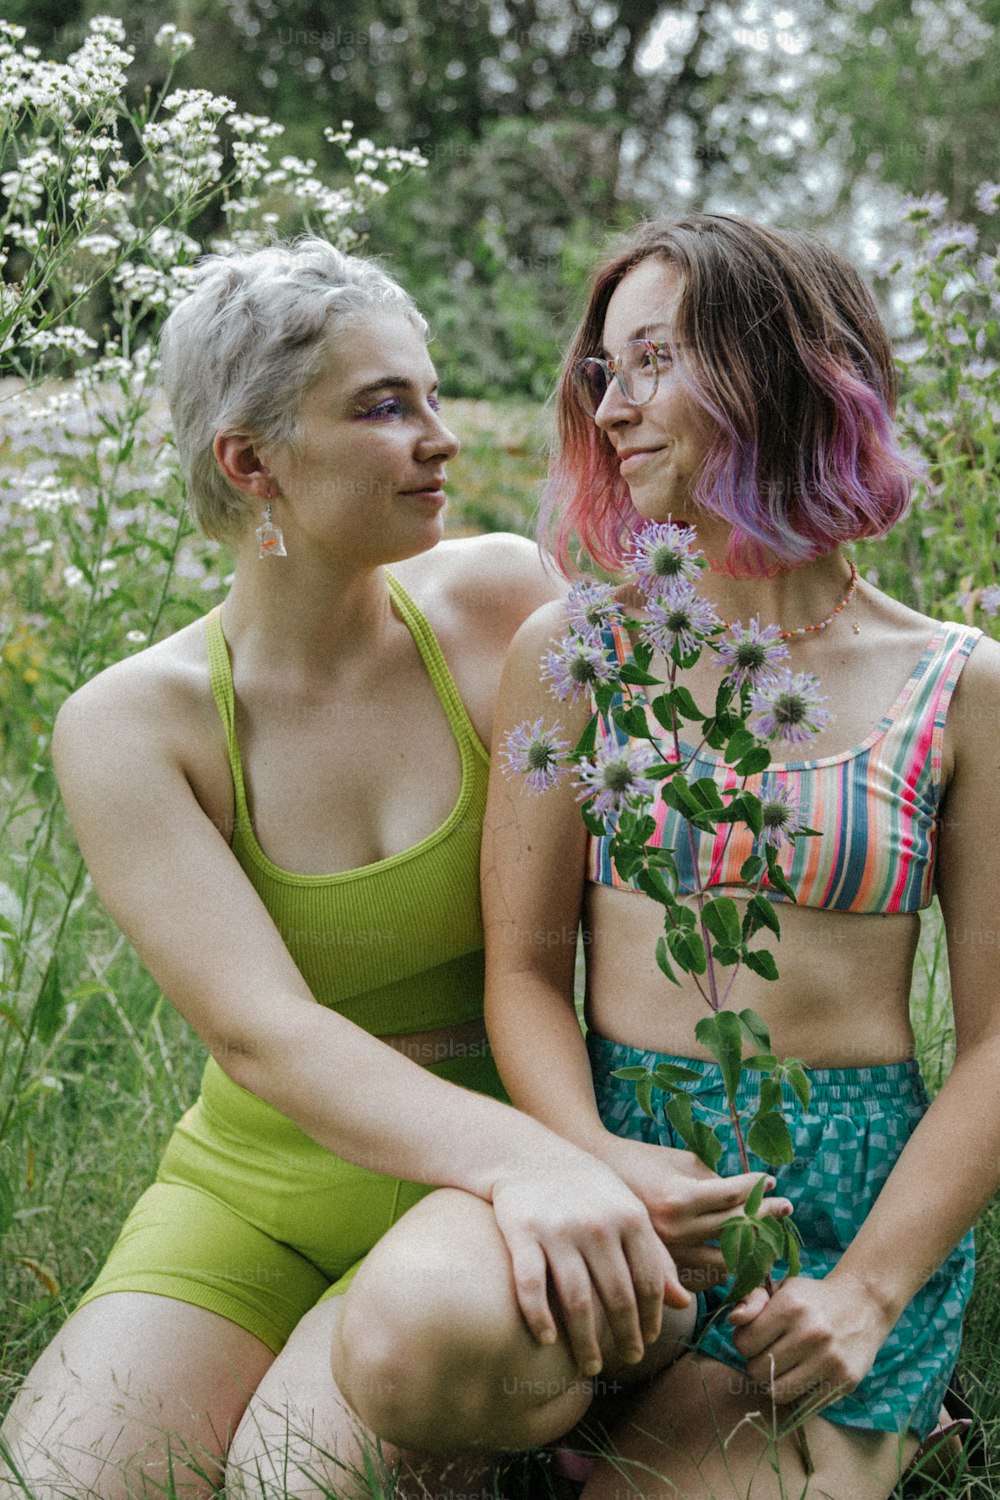 꽃밭에 앉아 있는 두 여자